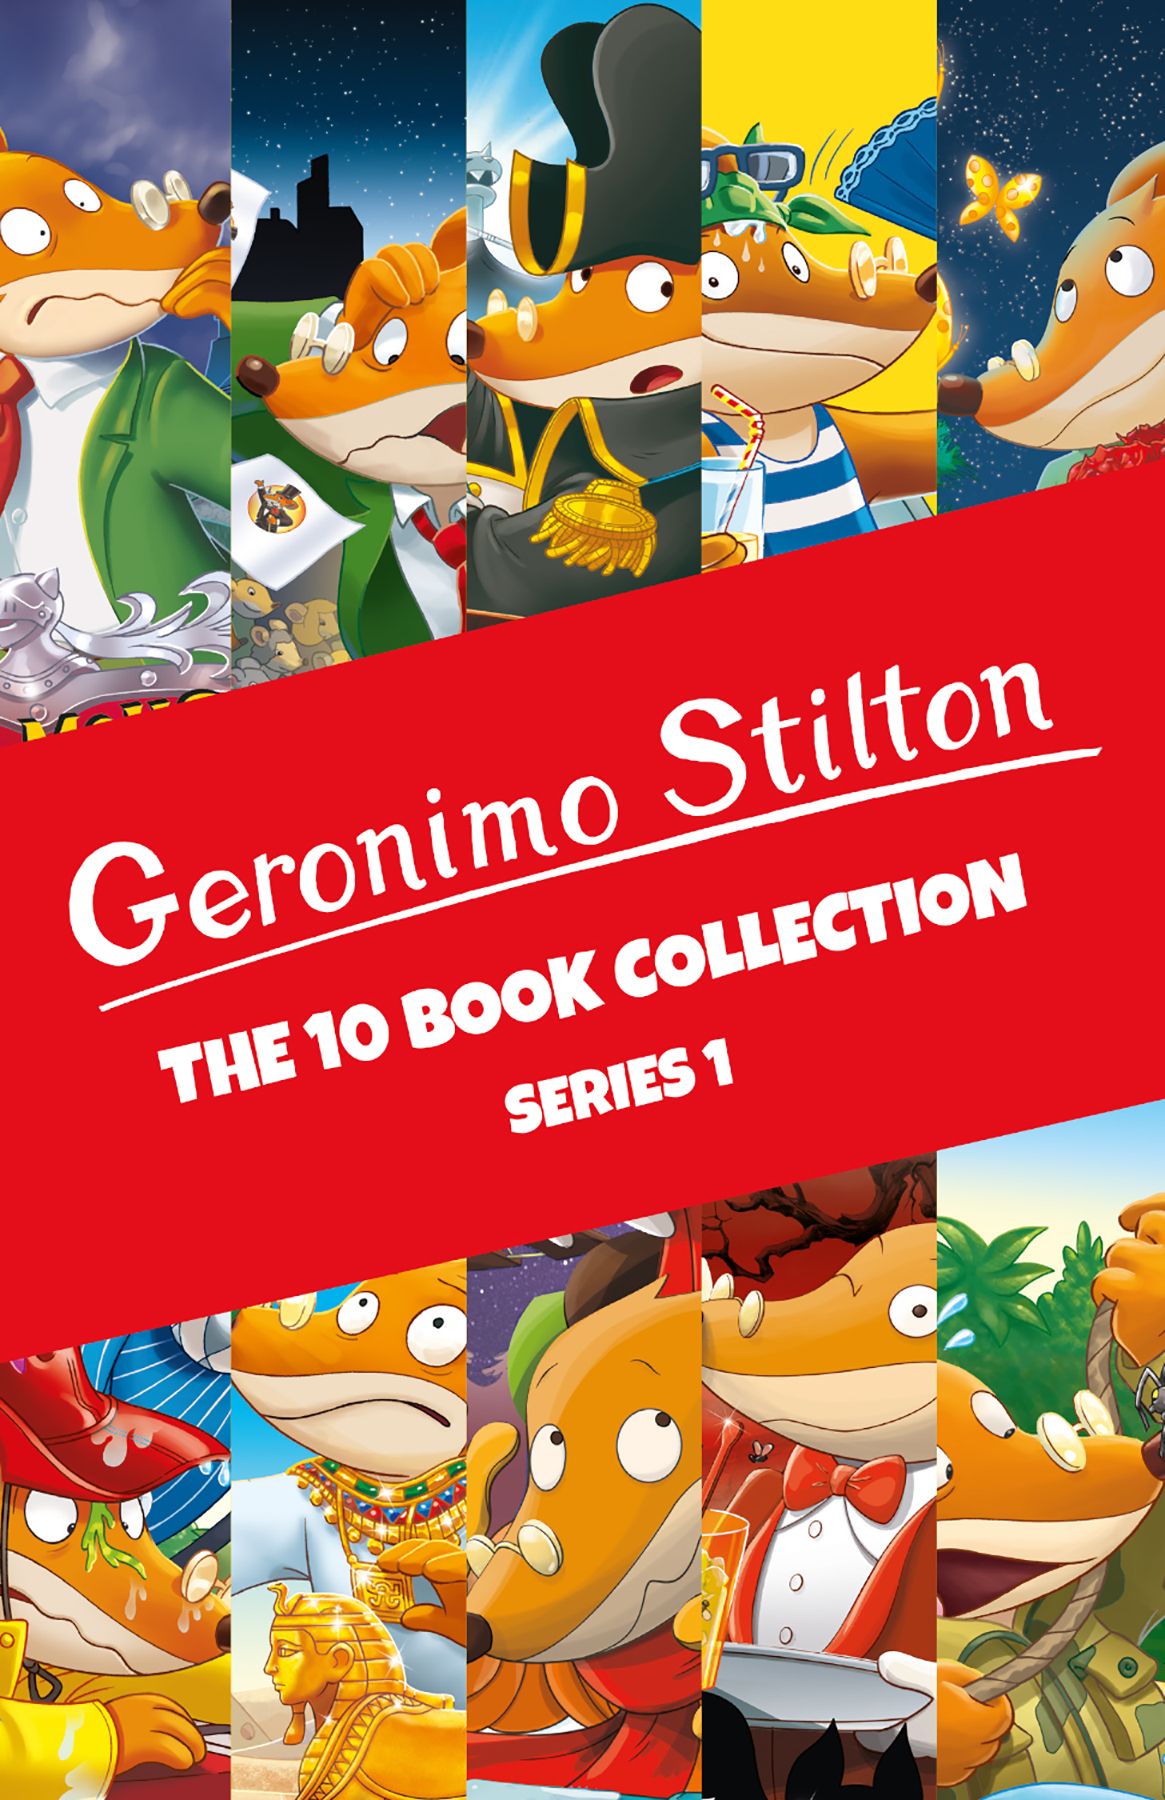 book review on geronimo stilton